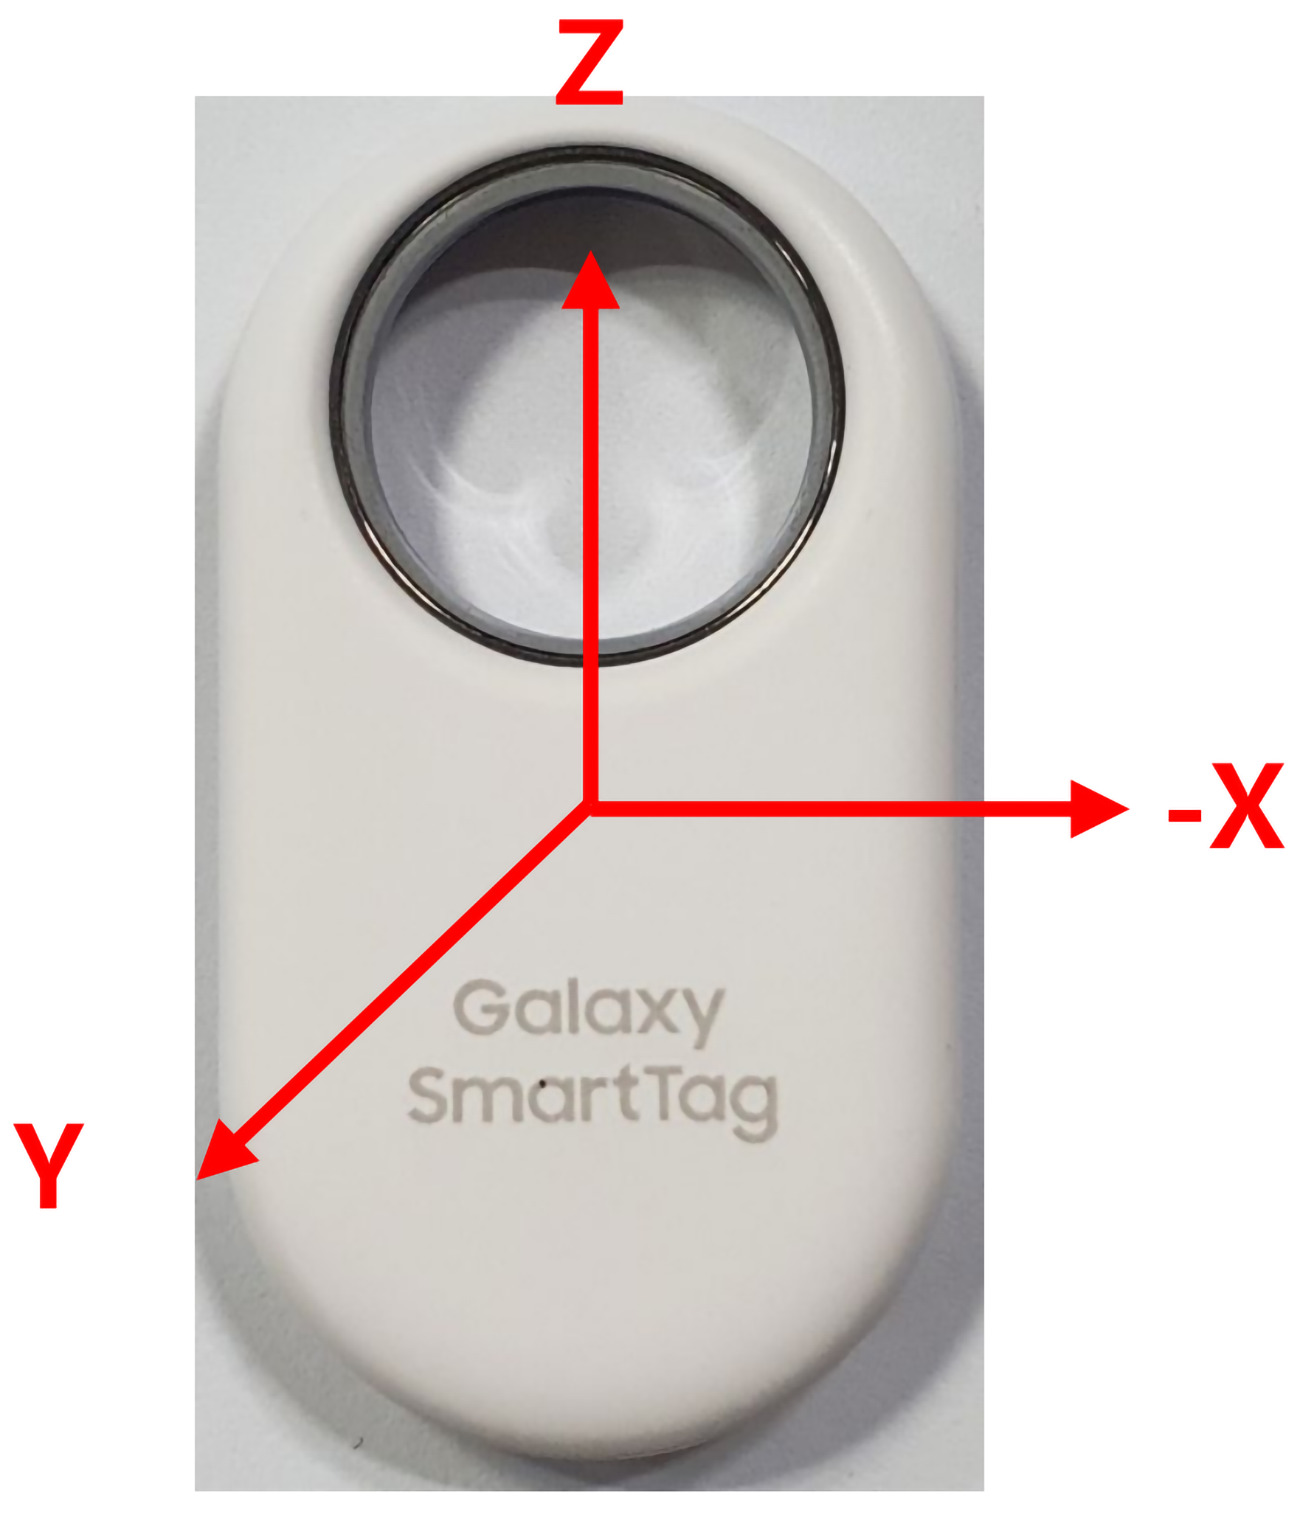 SmartTag 2 : le prochain tracker de Samsung sera plus précis, avec